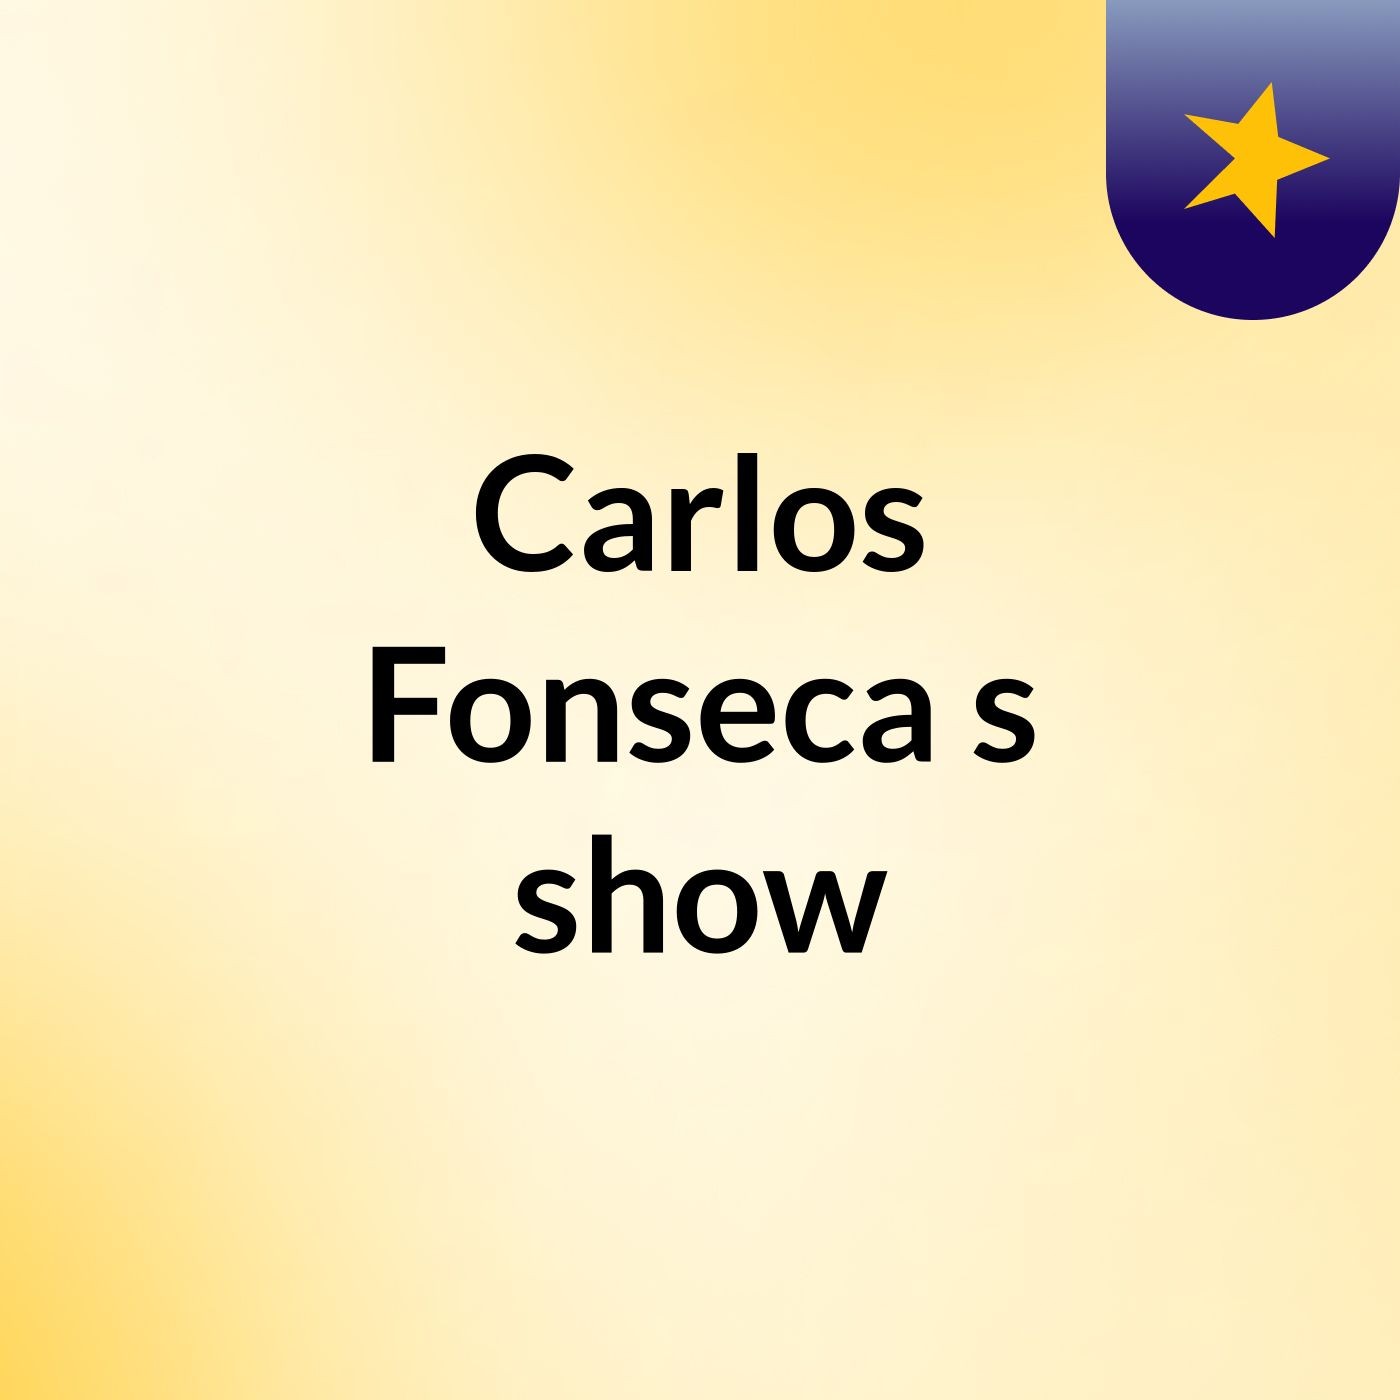 Carlos Fonseca's show